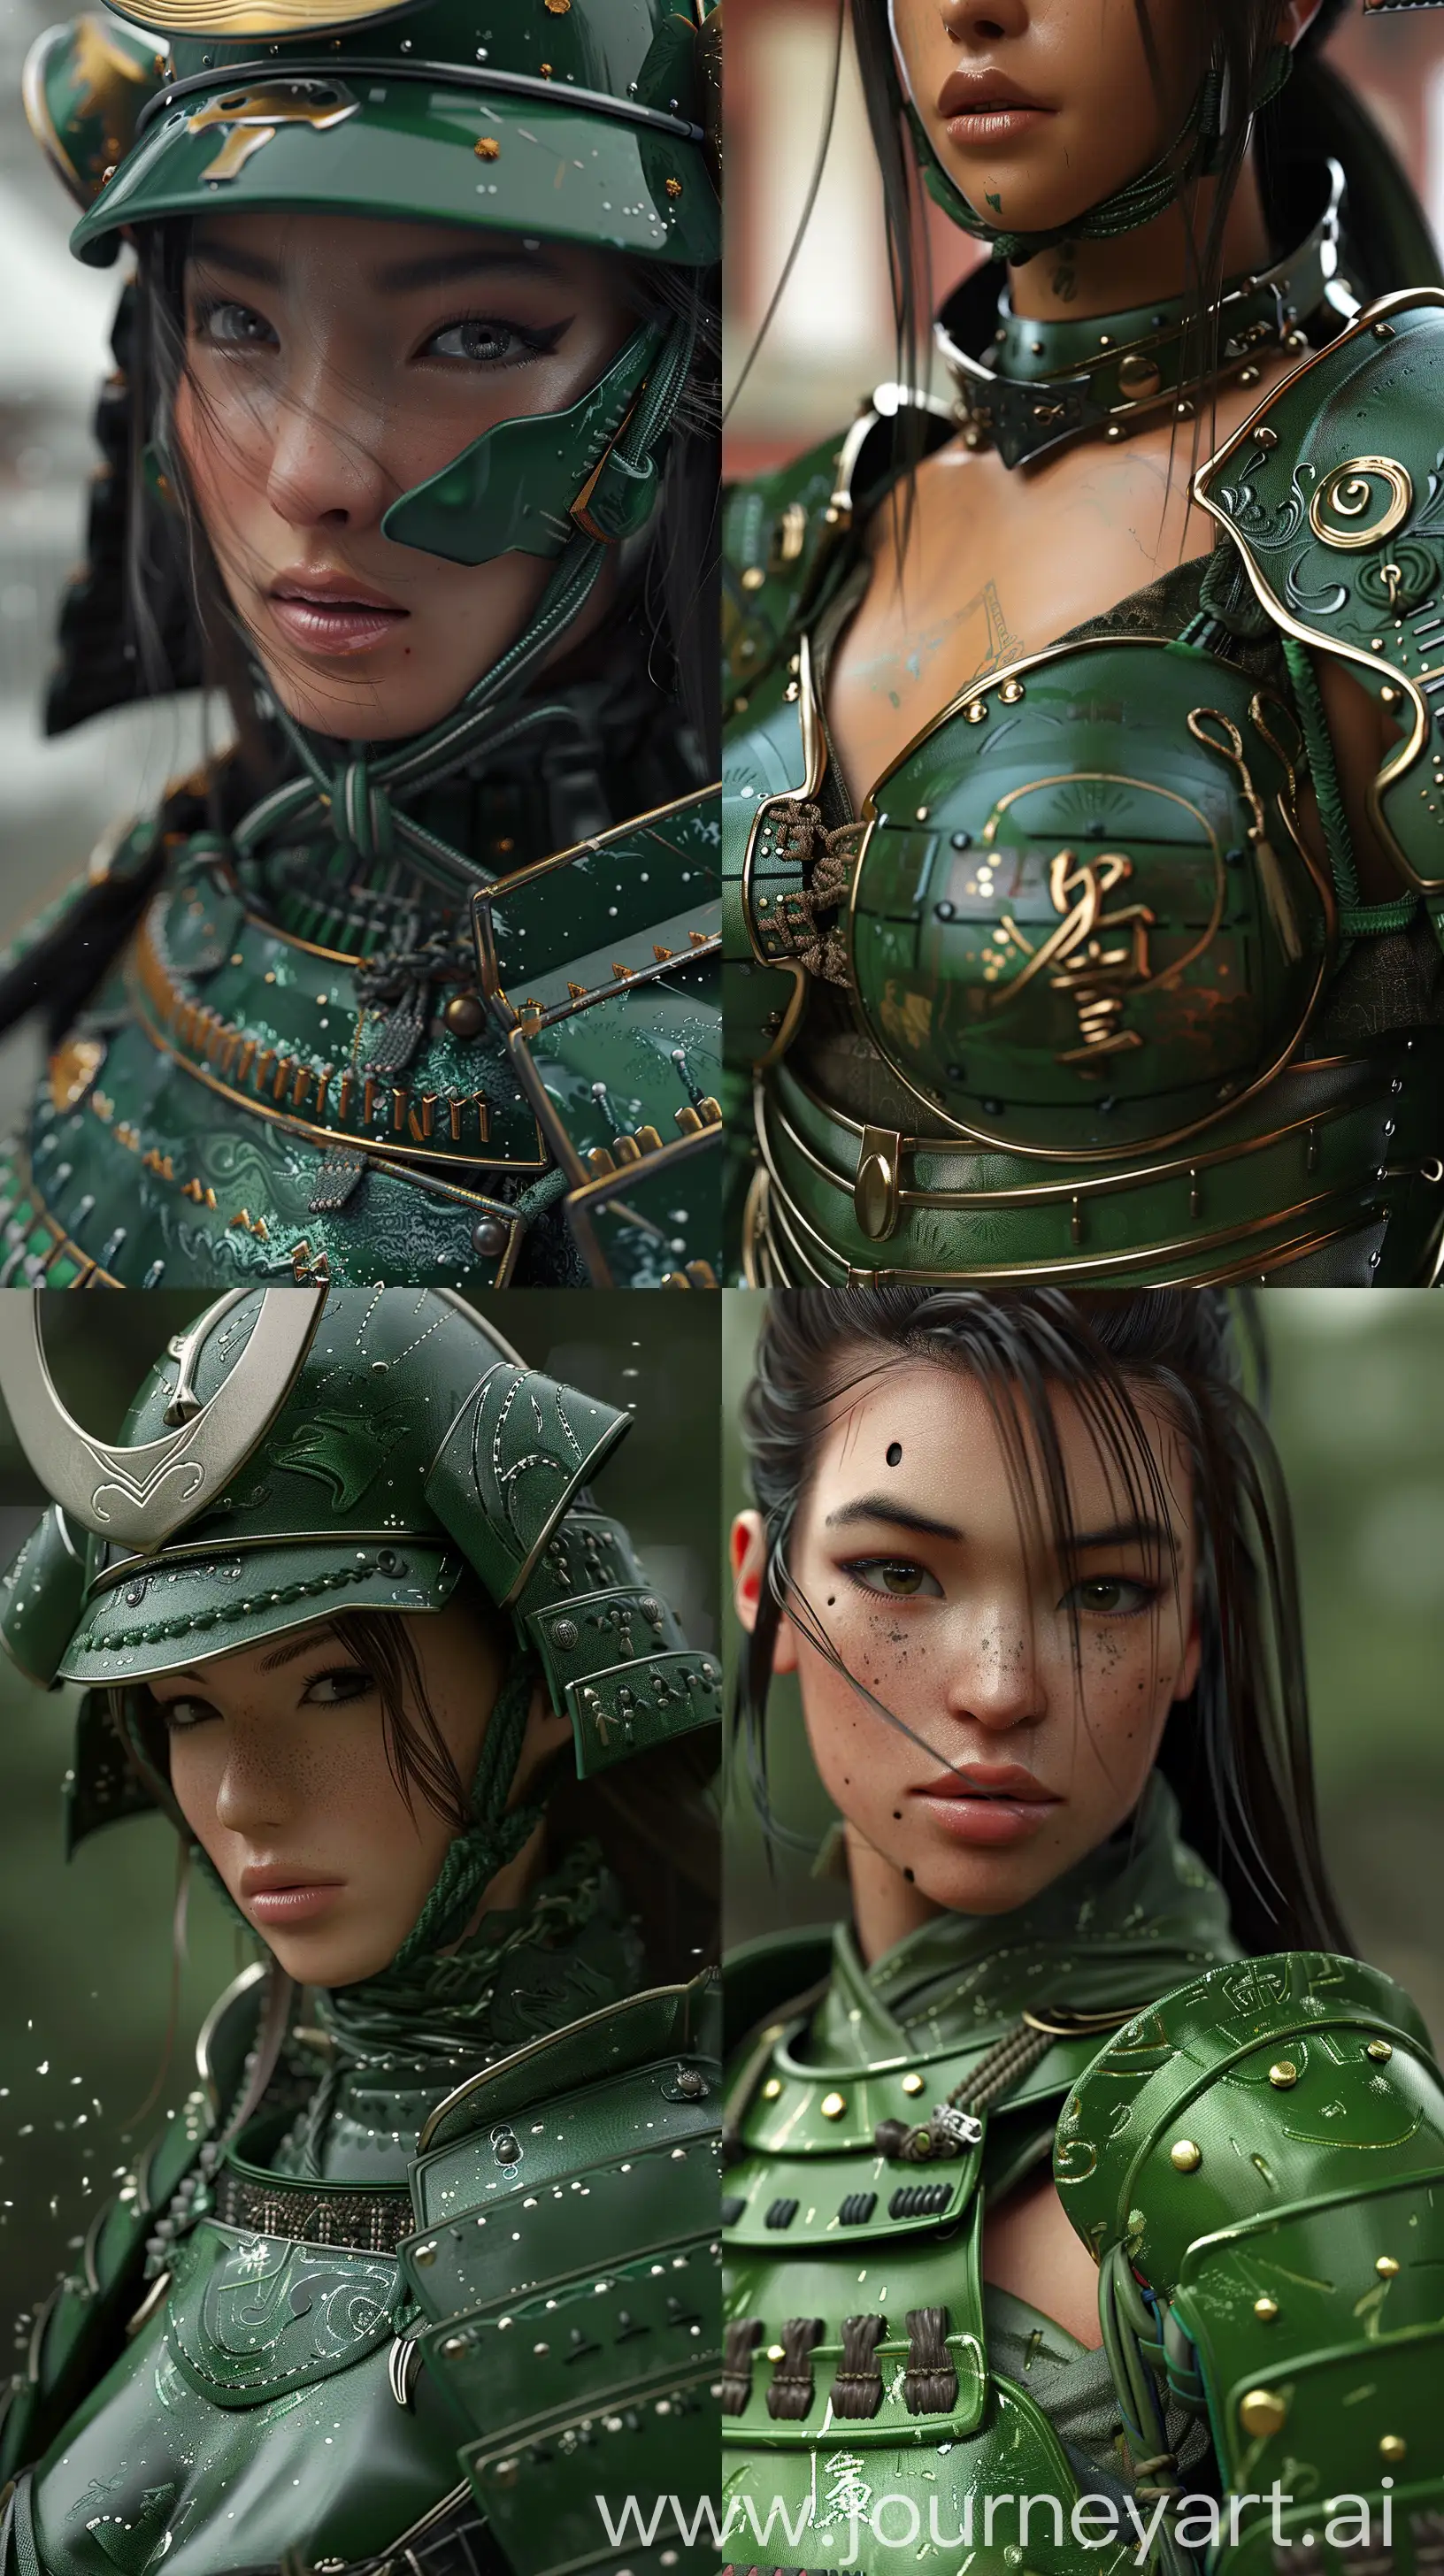 3d render, a women wearing Green samurai armours, close-up shot --ar 9:16 